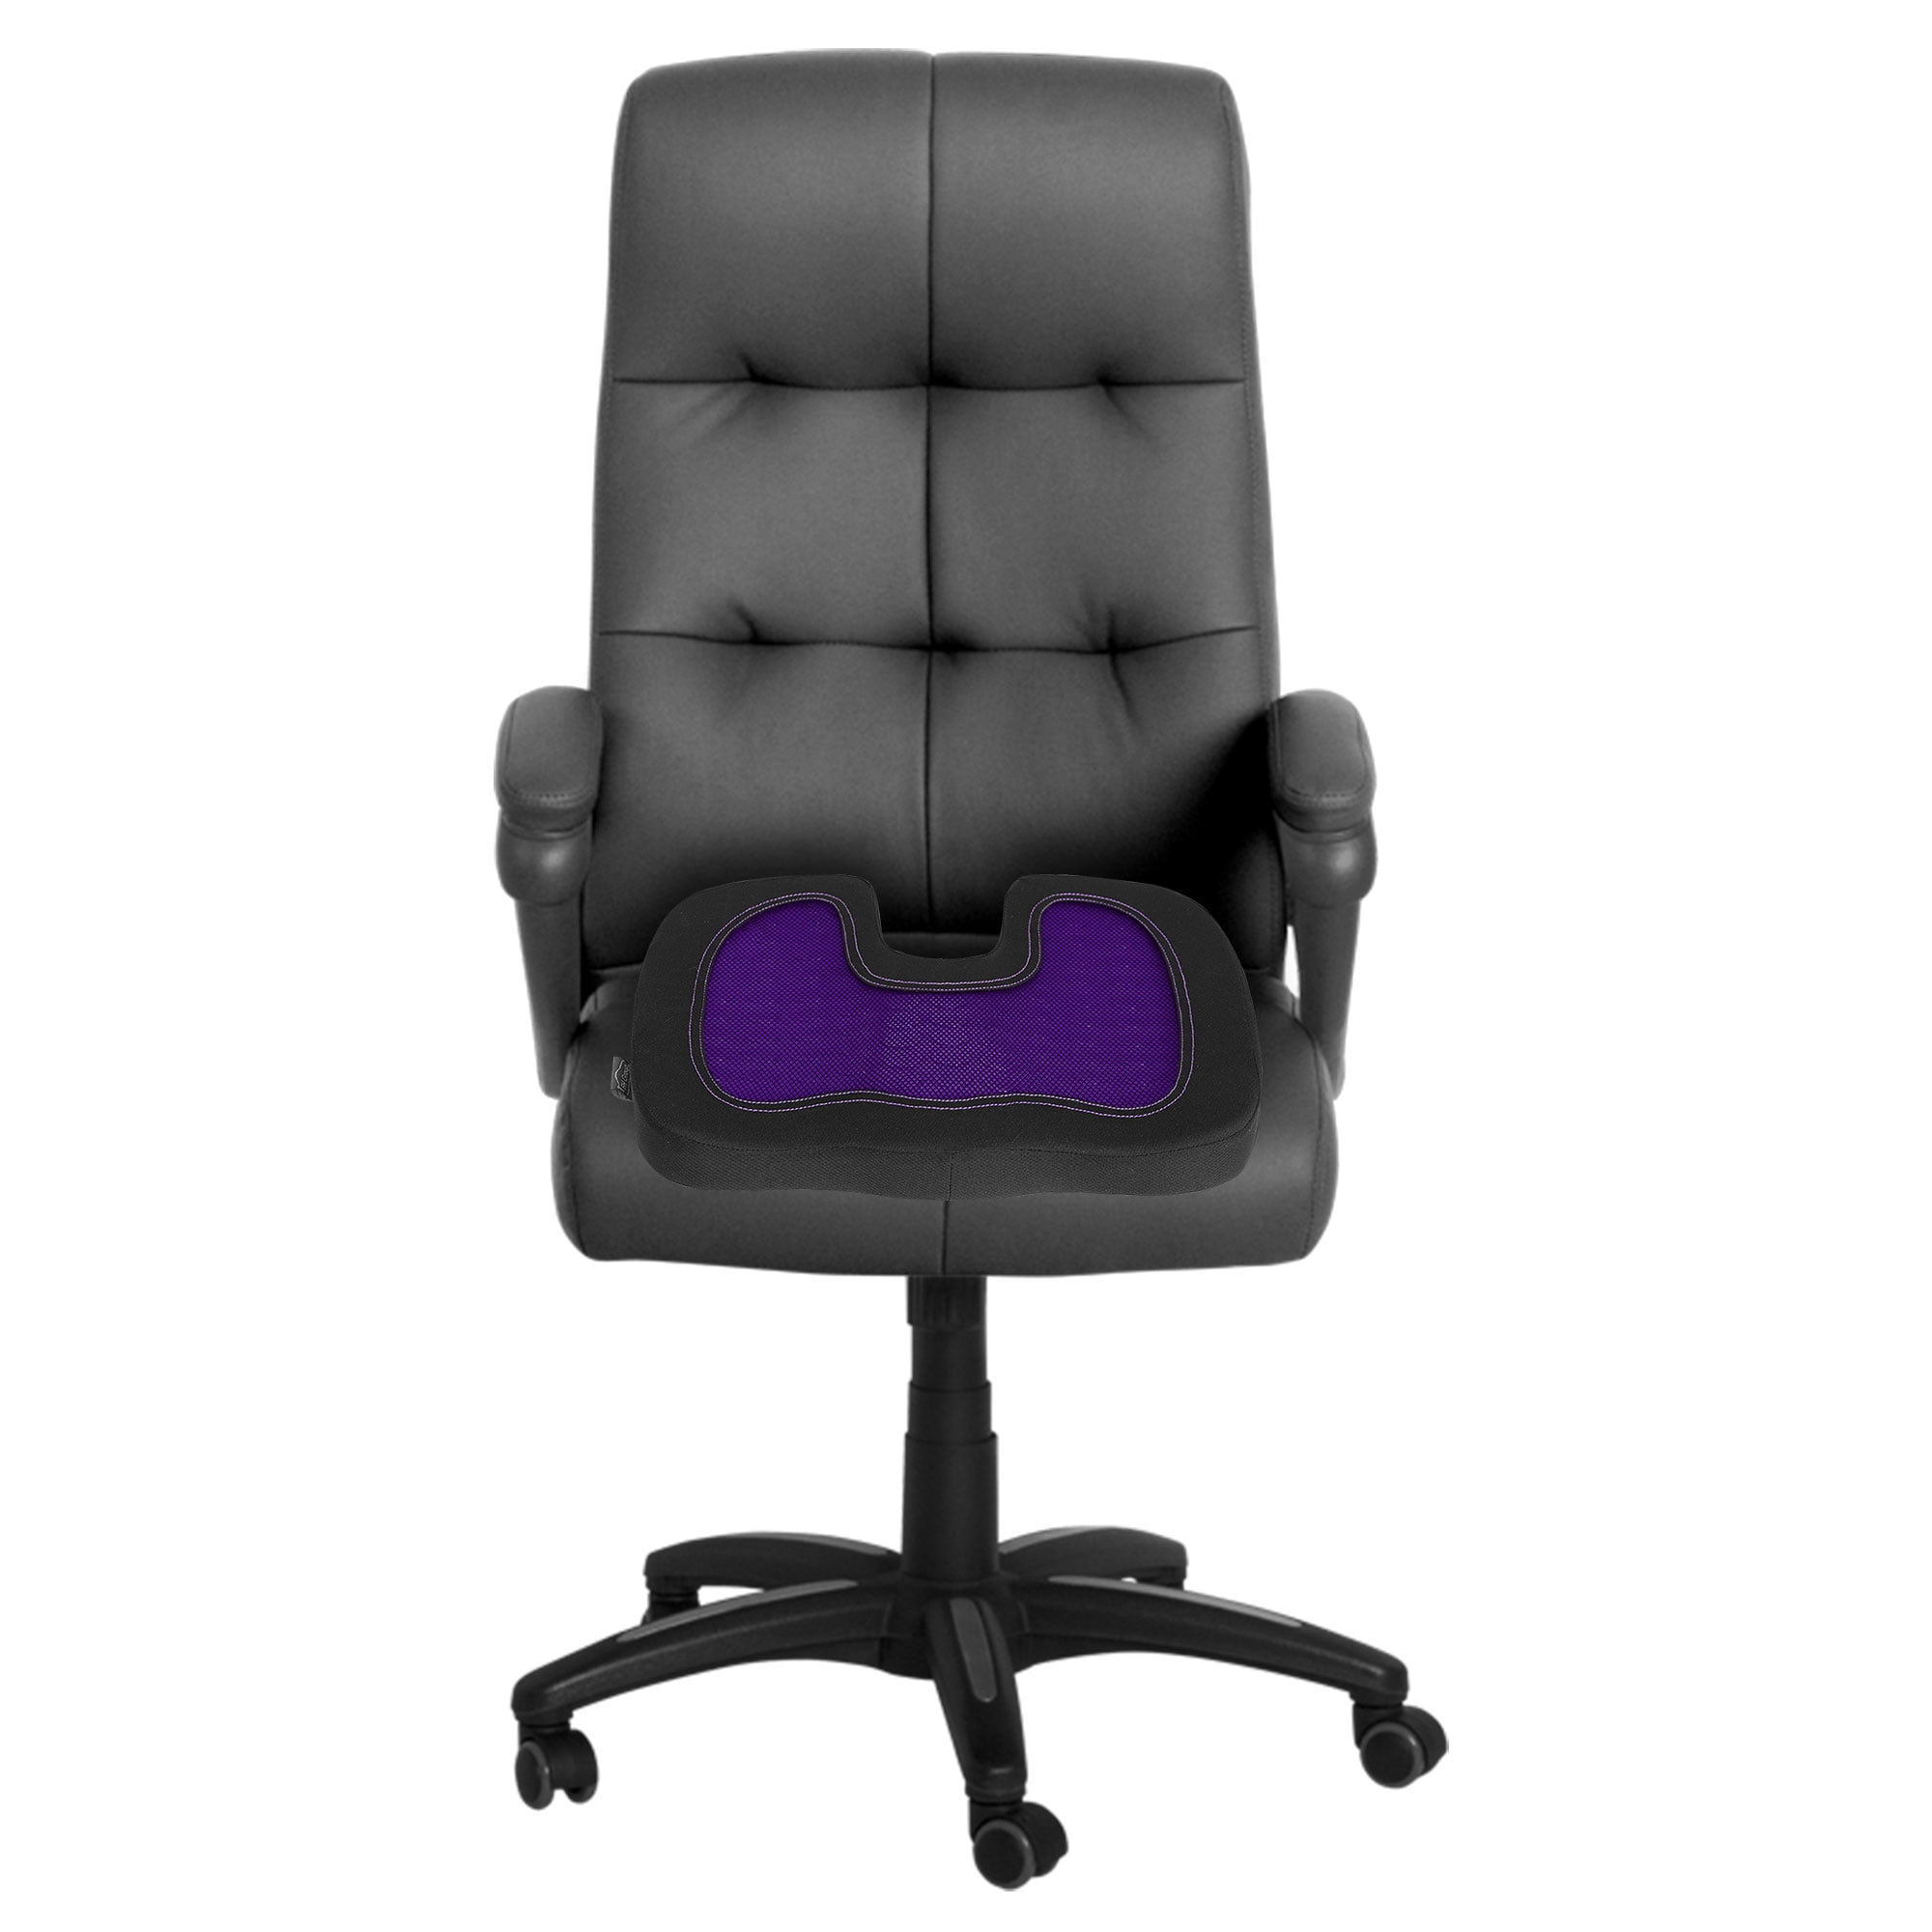 VINGAA Office Chair Cushion,Seat Cushion for Desk Chair,Office Chair  Cushions for Back and Butt,Integrated Plush Desk Chair Cushion,Gaming Chair